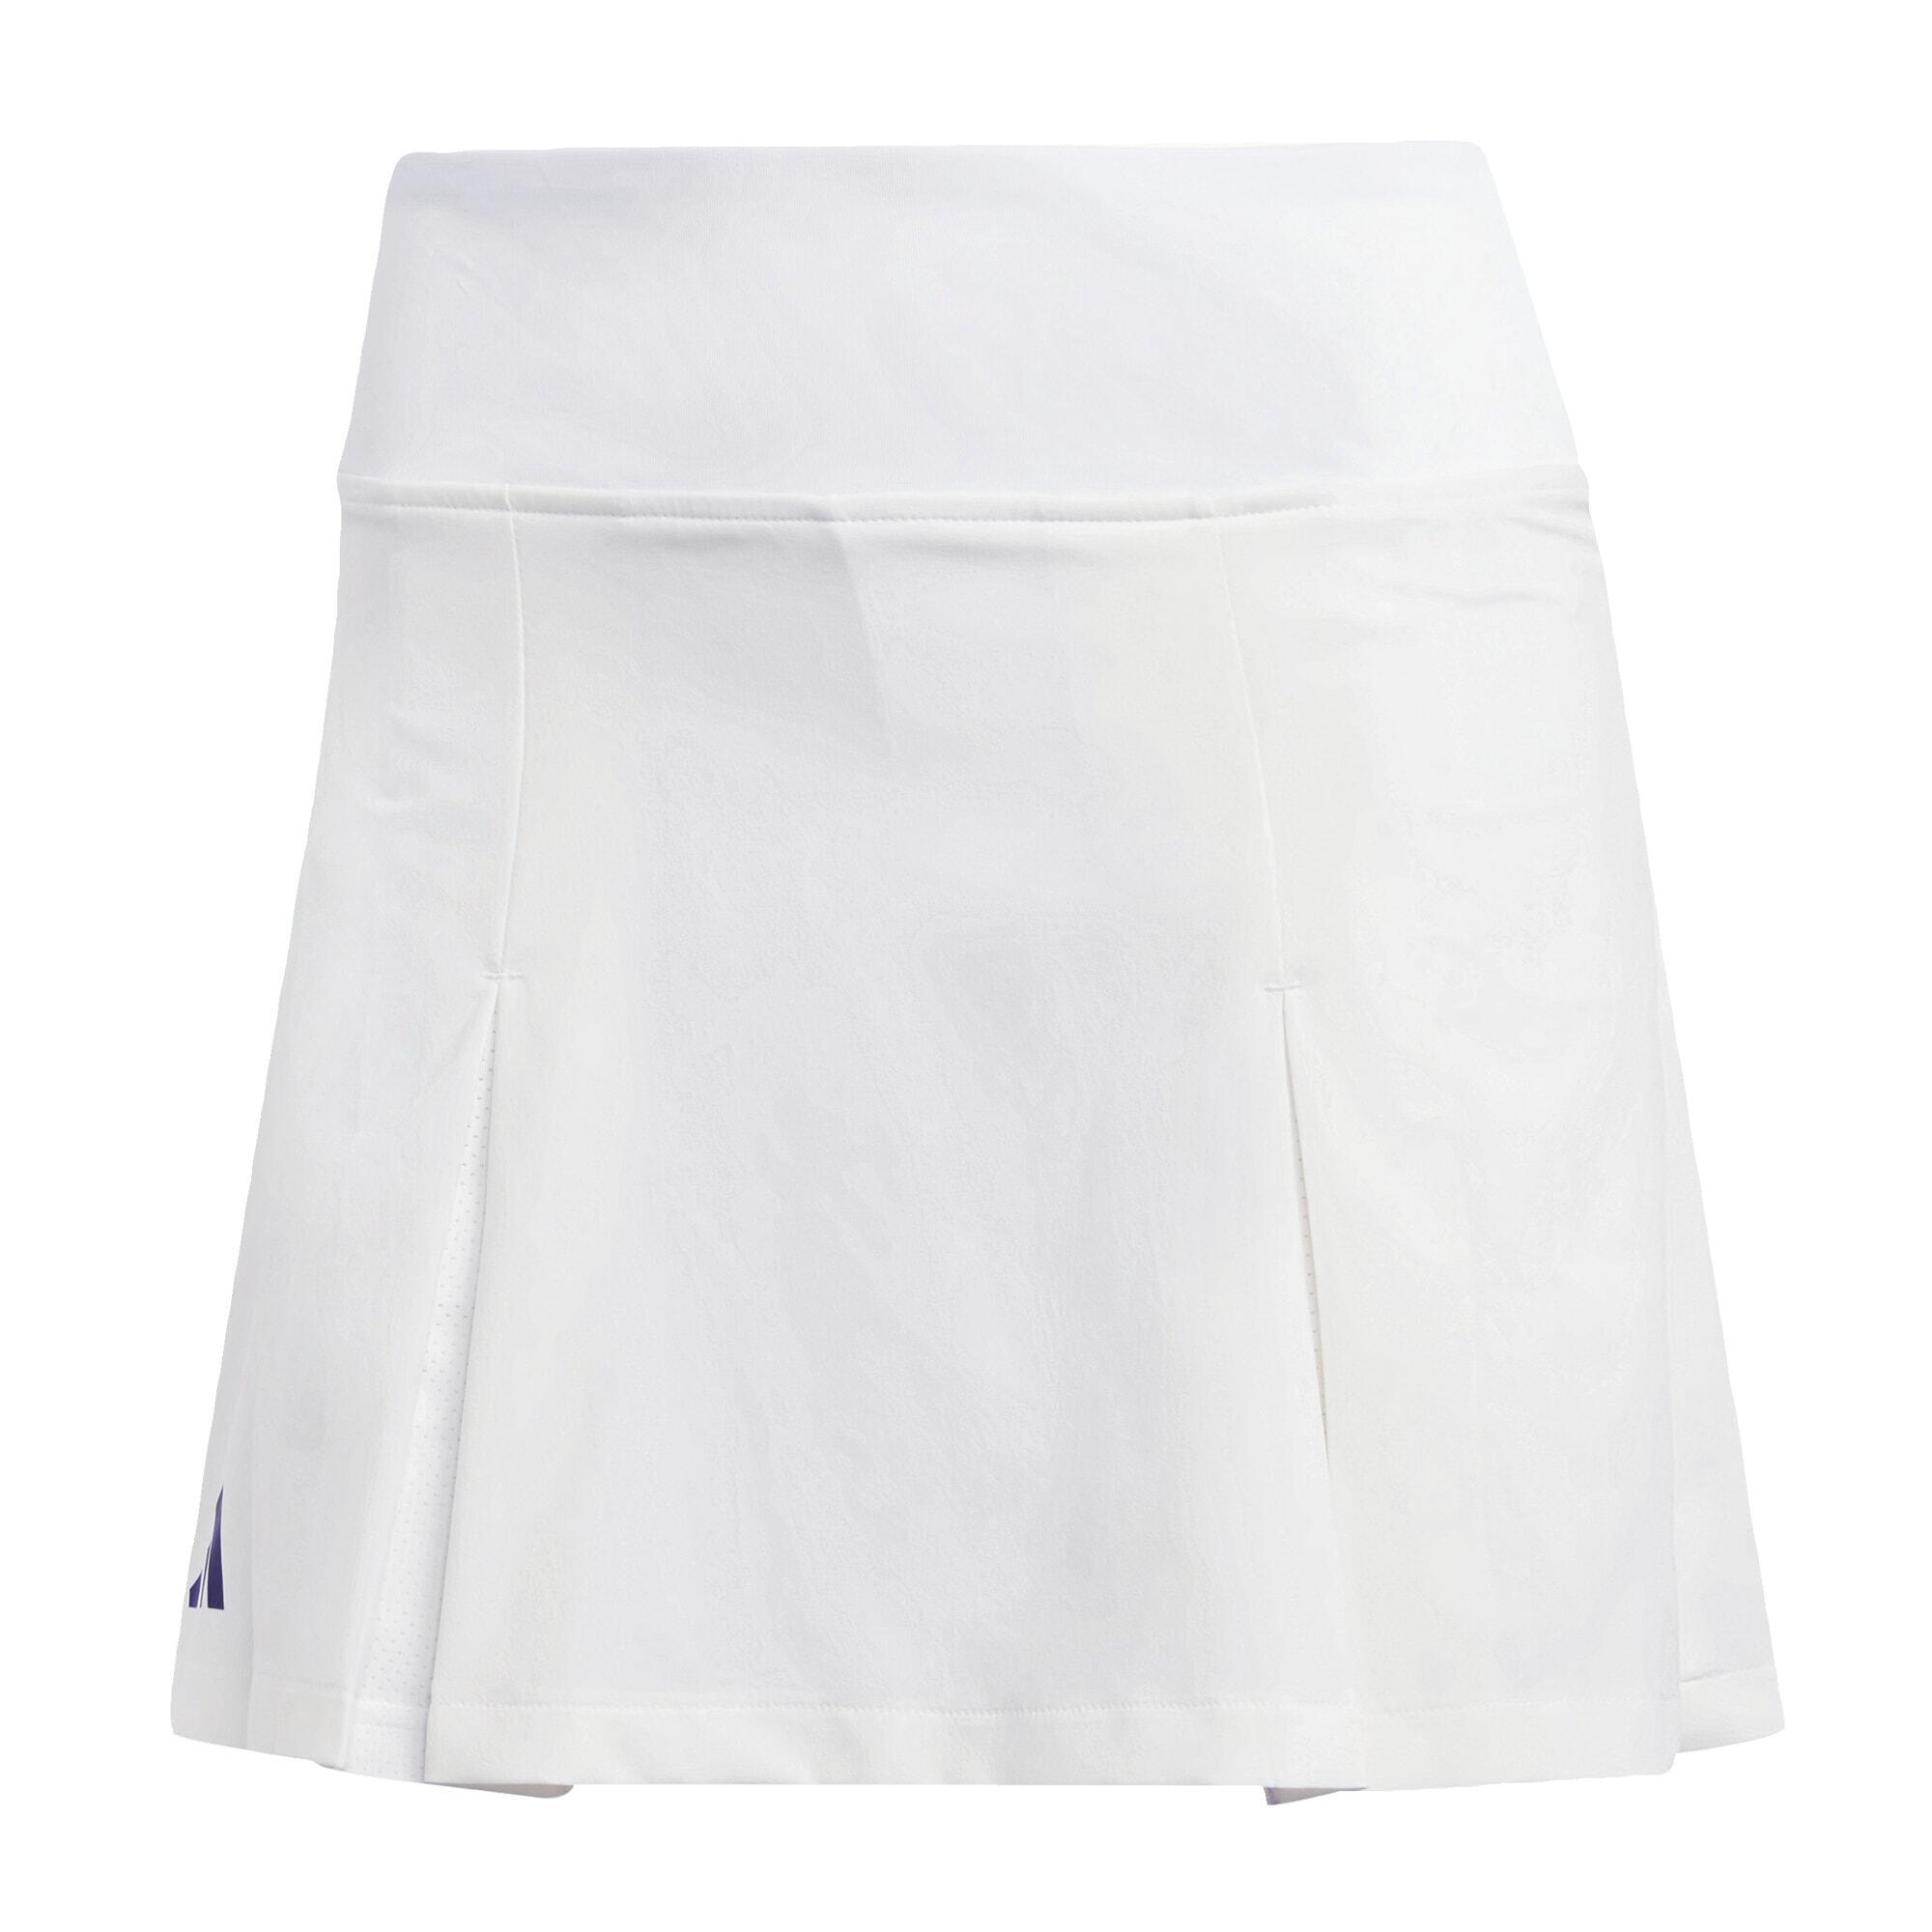 Club Tennis Pleated Skirt 2/5